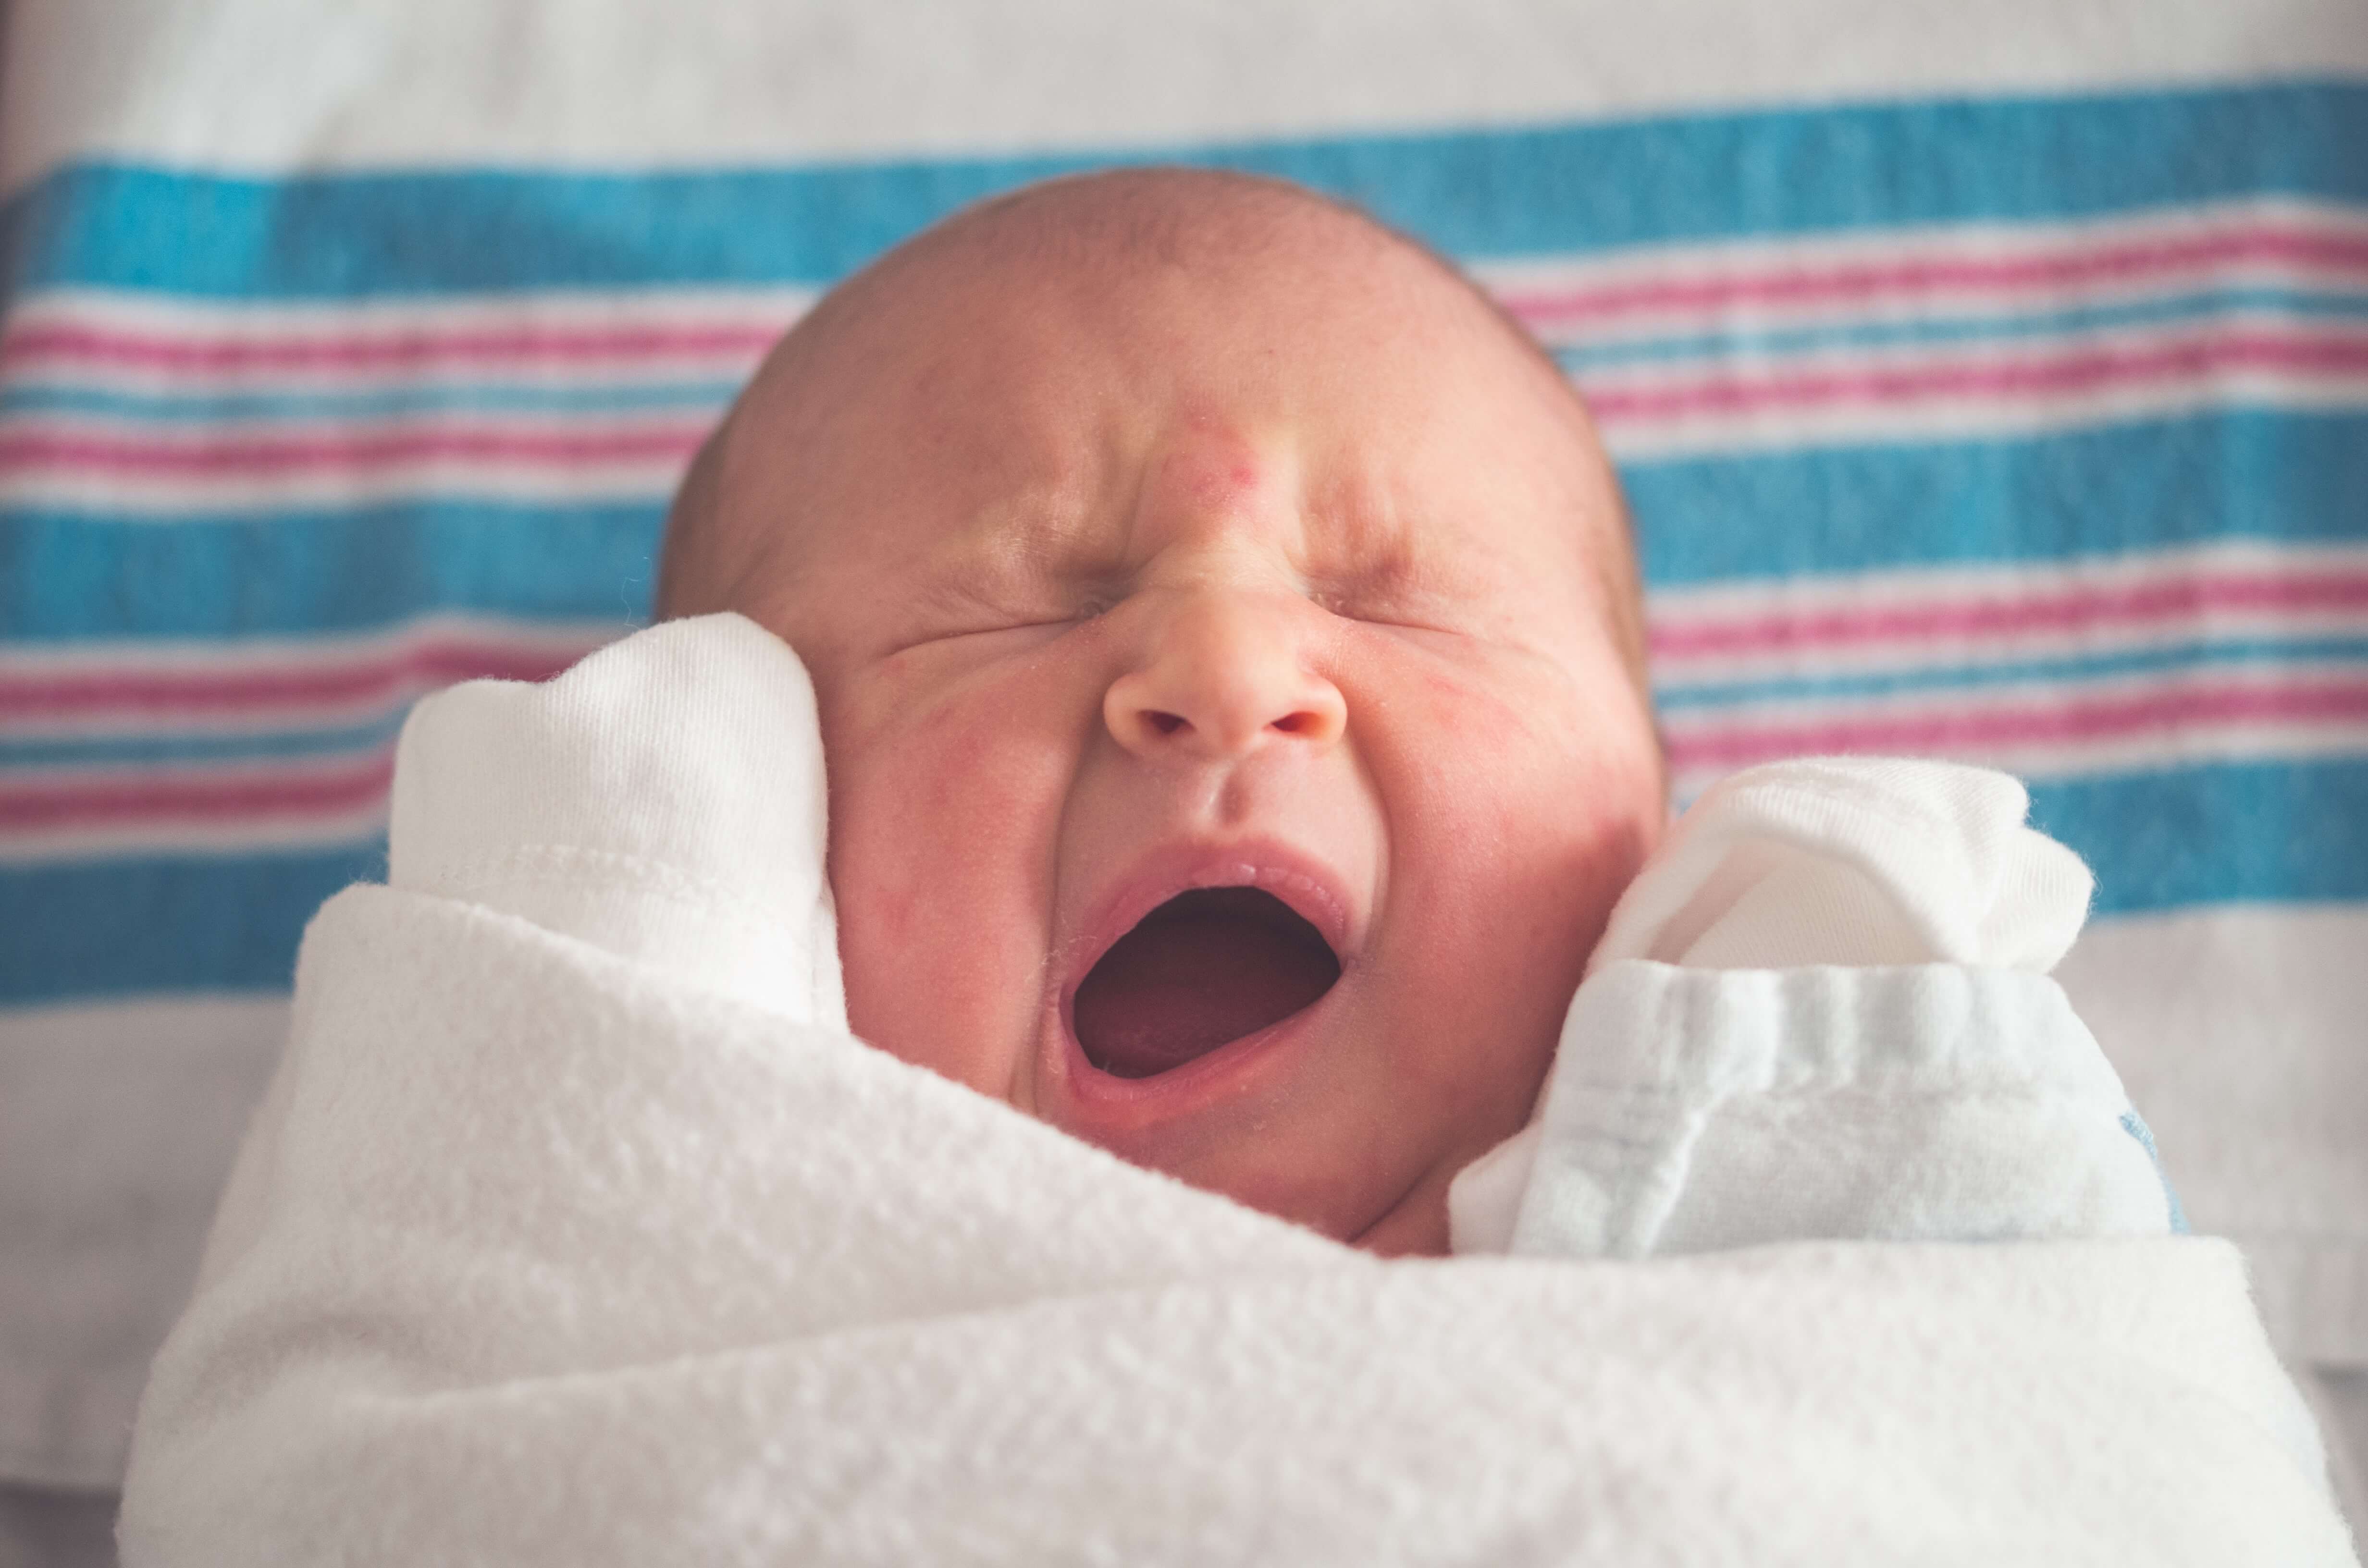 A cute yawning newborn